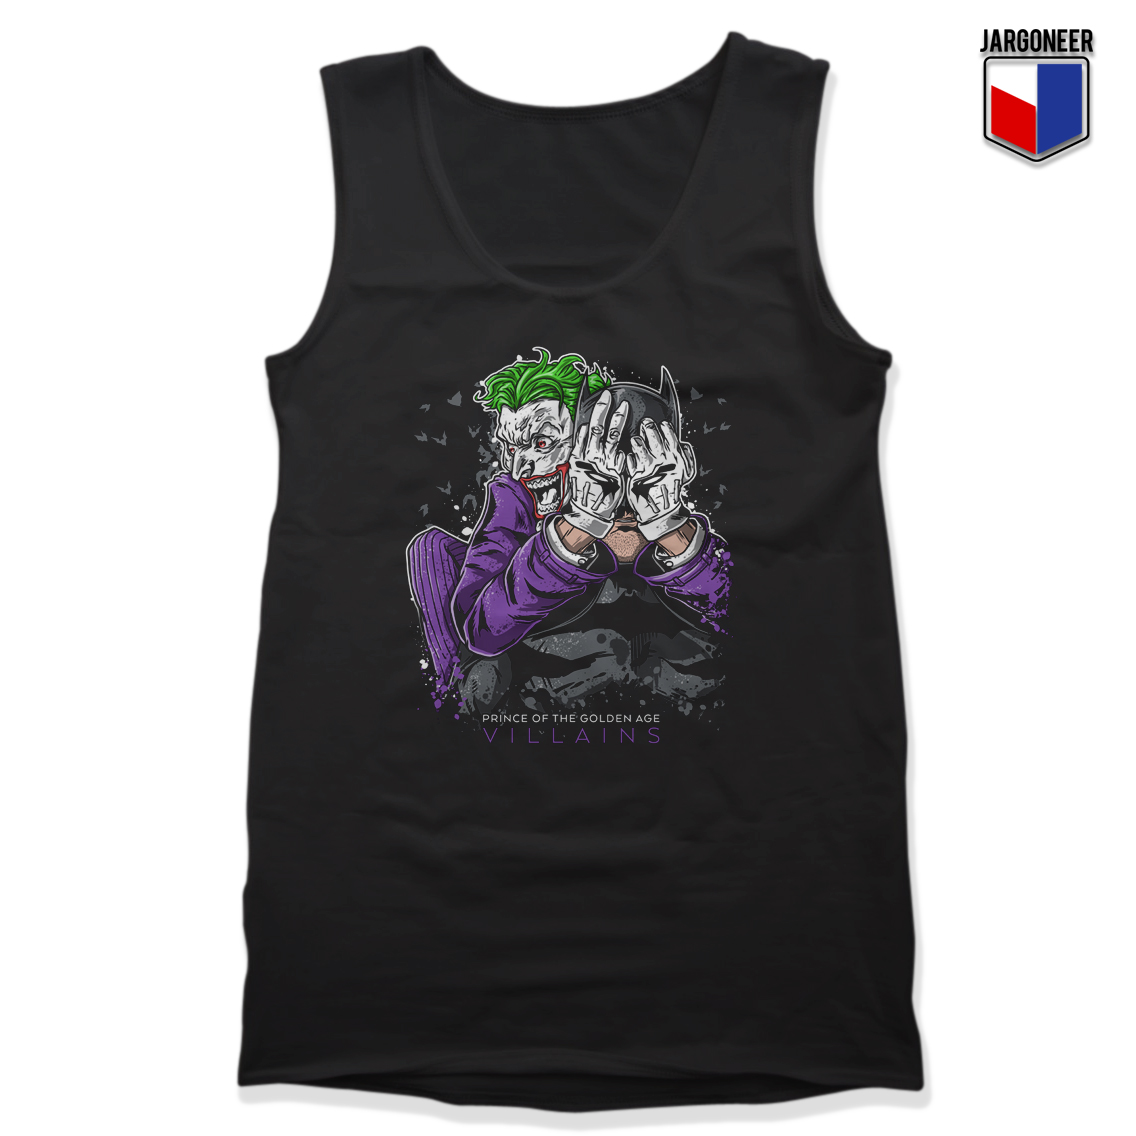 Cool The Bat Joker Unisex Adult Tank Top Design - Shop Unique Graphic Cool Shirt Designs